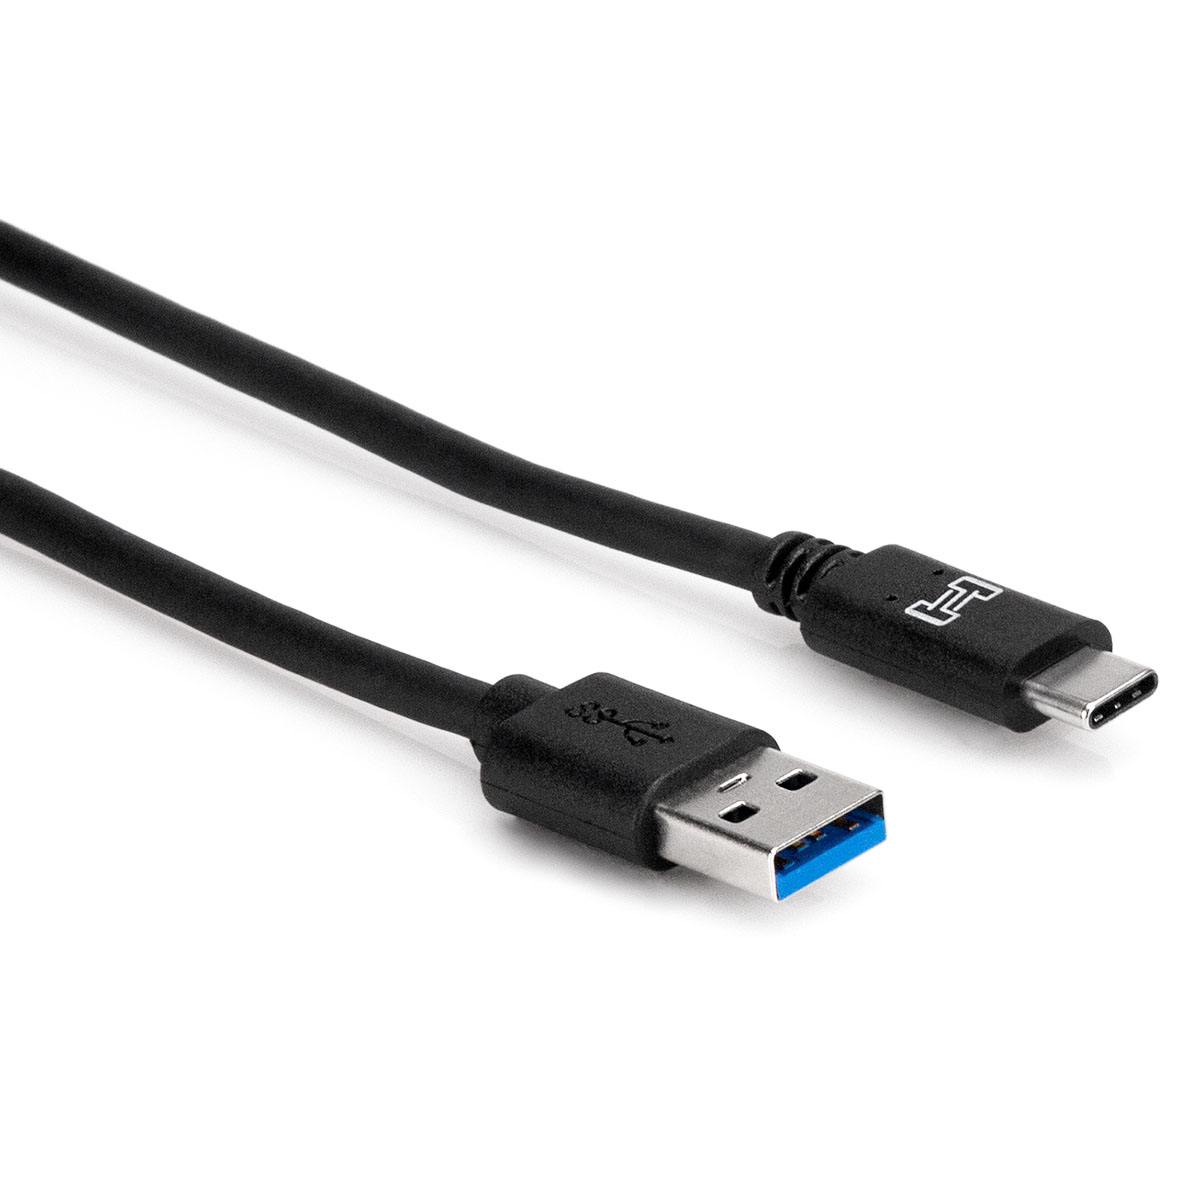 Cable corto USB C a USB C Carga más rápida, video 8k y transferencia de  datos de 40 gbps